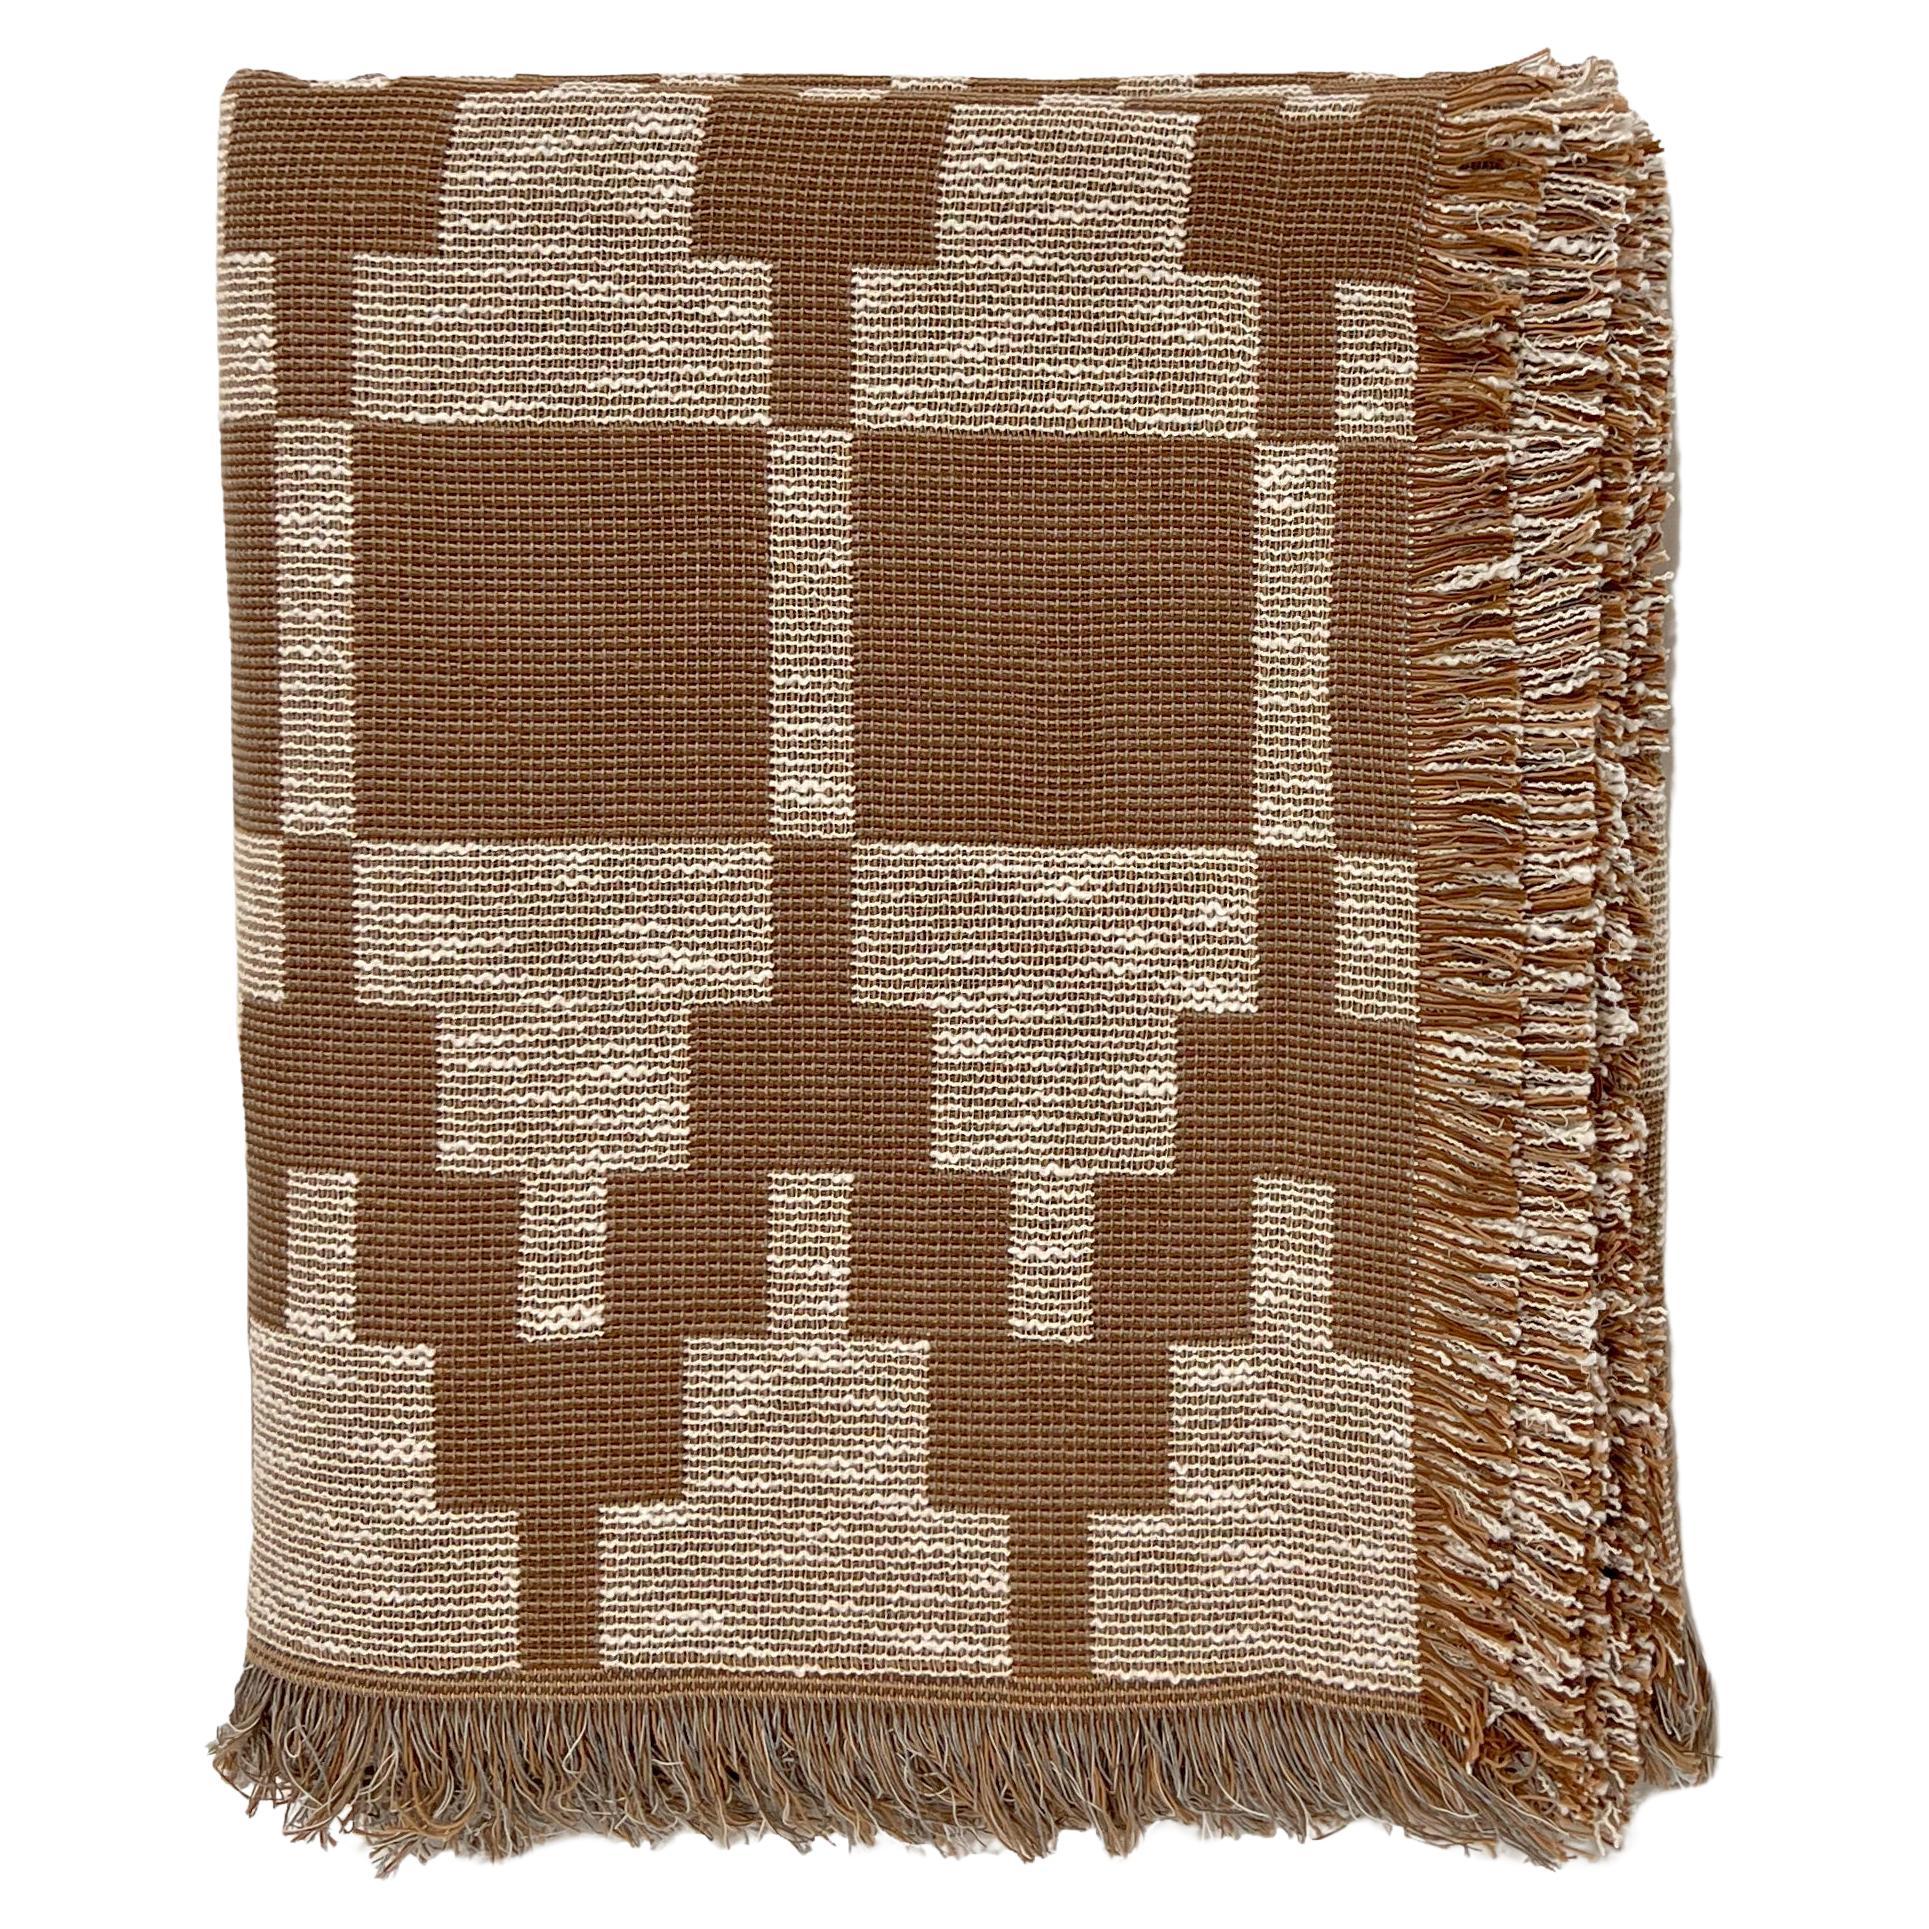 Gemusterte Überdeckendecke aus gewebter Baumwolle von Folk Textiles (Willa / Mud)